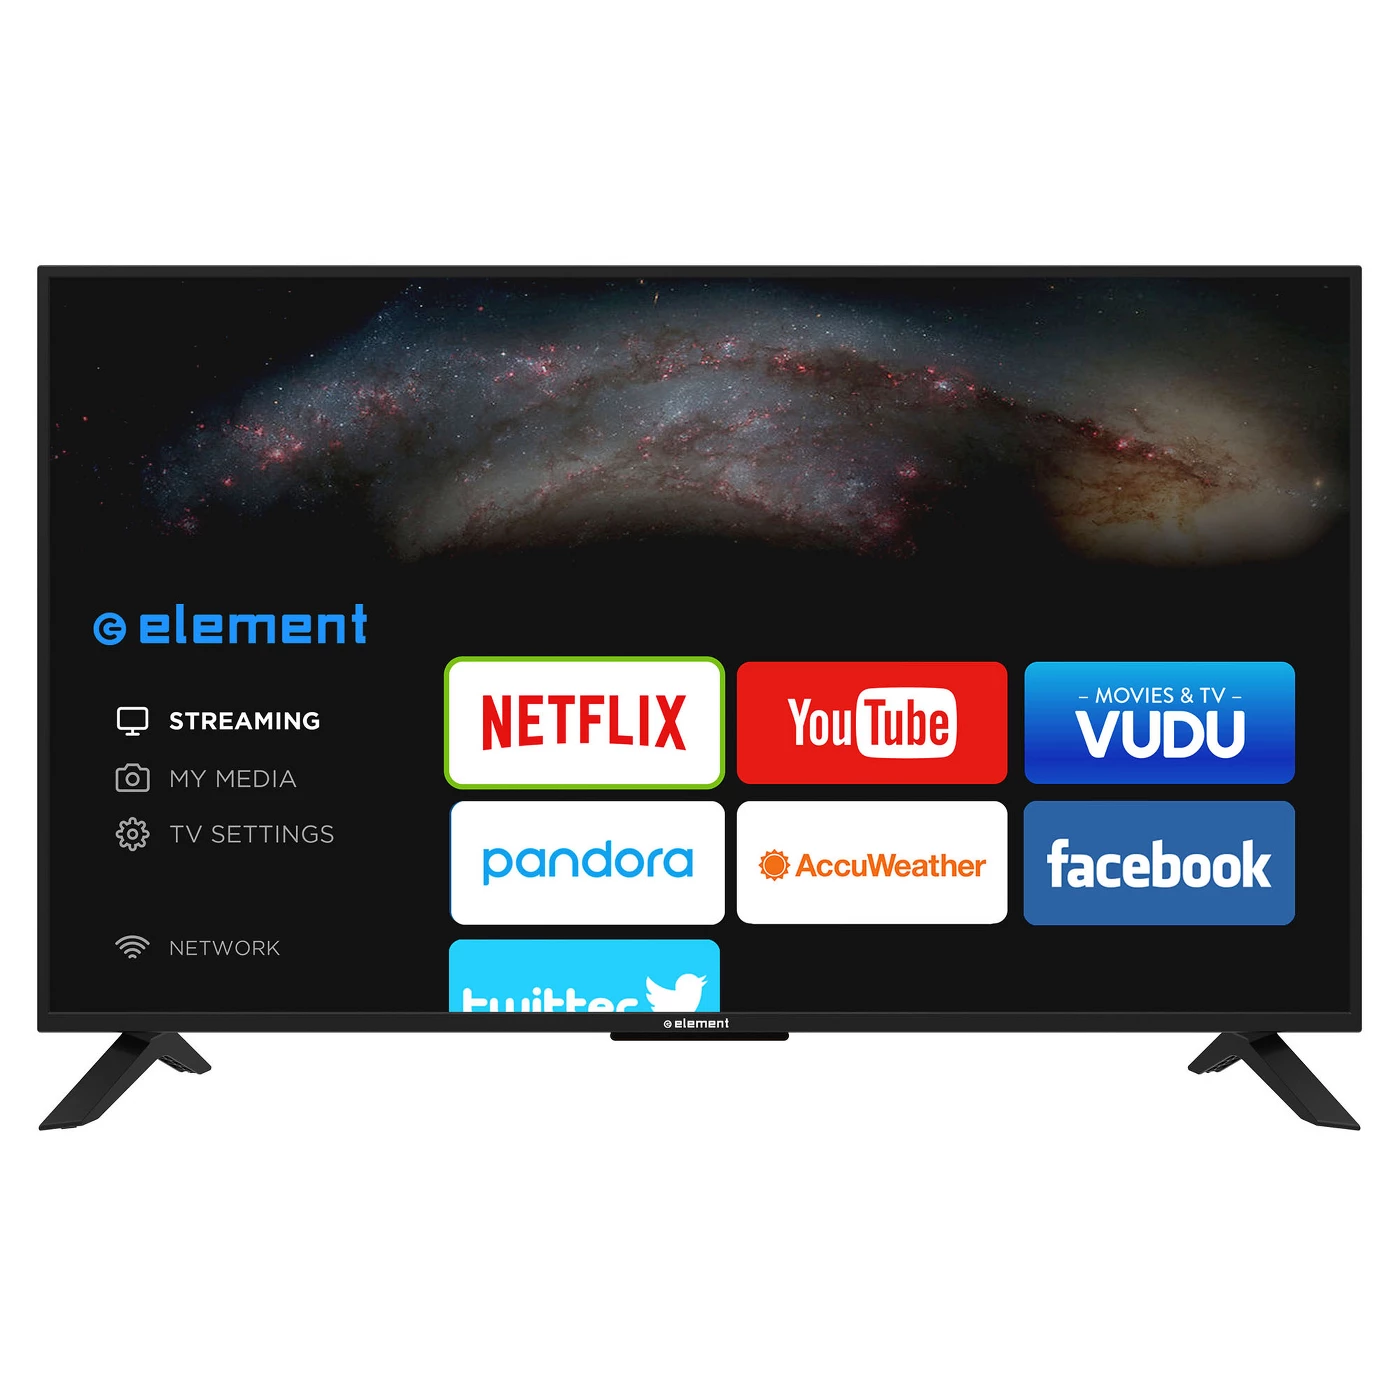 Element 40" 1080p 60Hz Smart LED HD TV - Black (ELST4017) - image 1 of 8